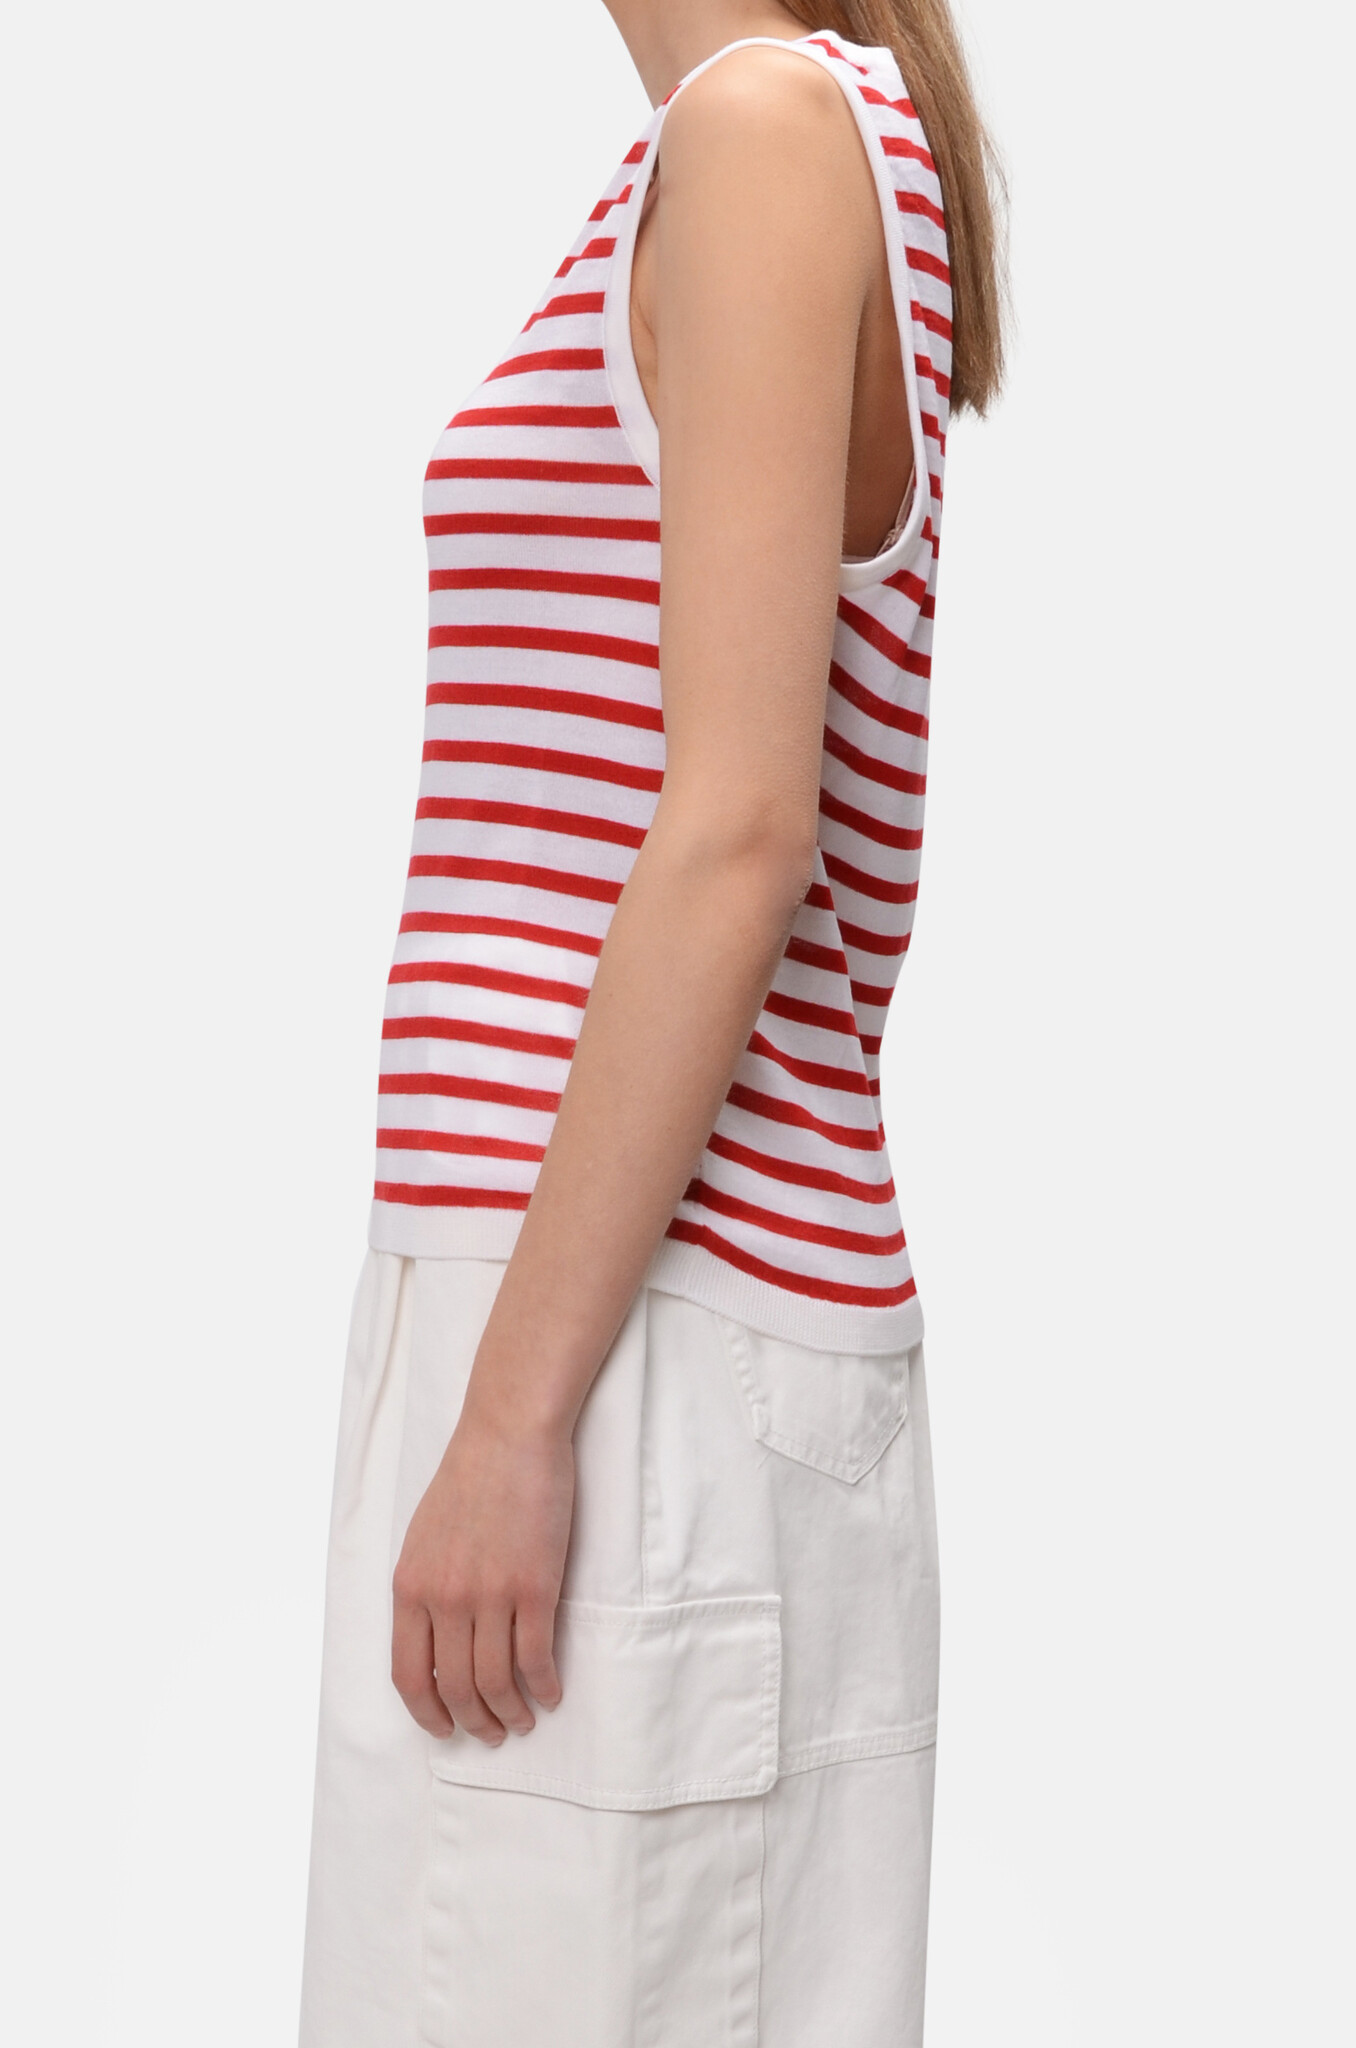 Stripe Knit Tank Top in red-3